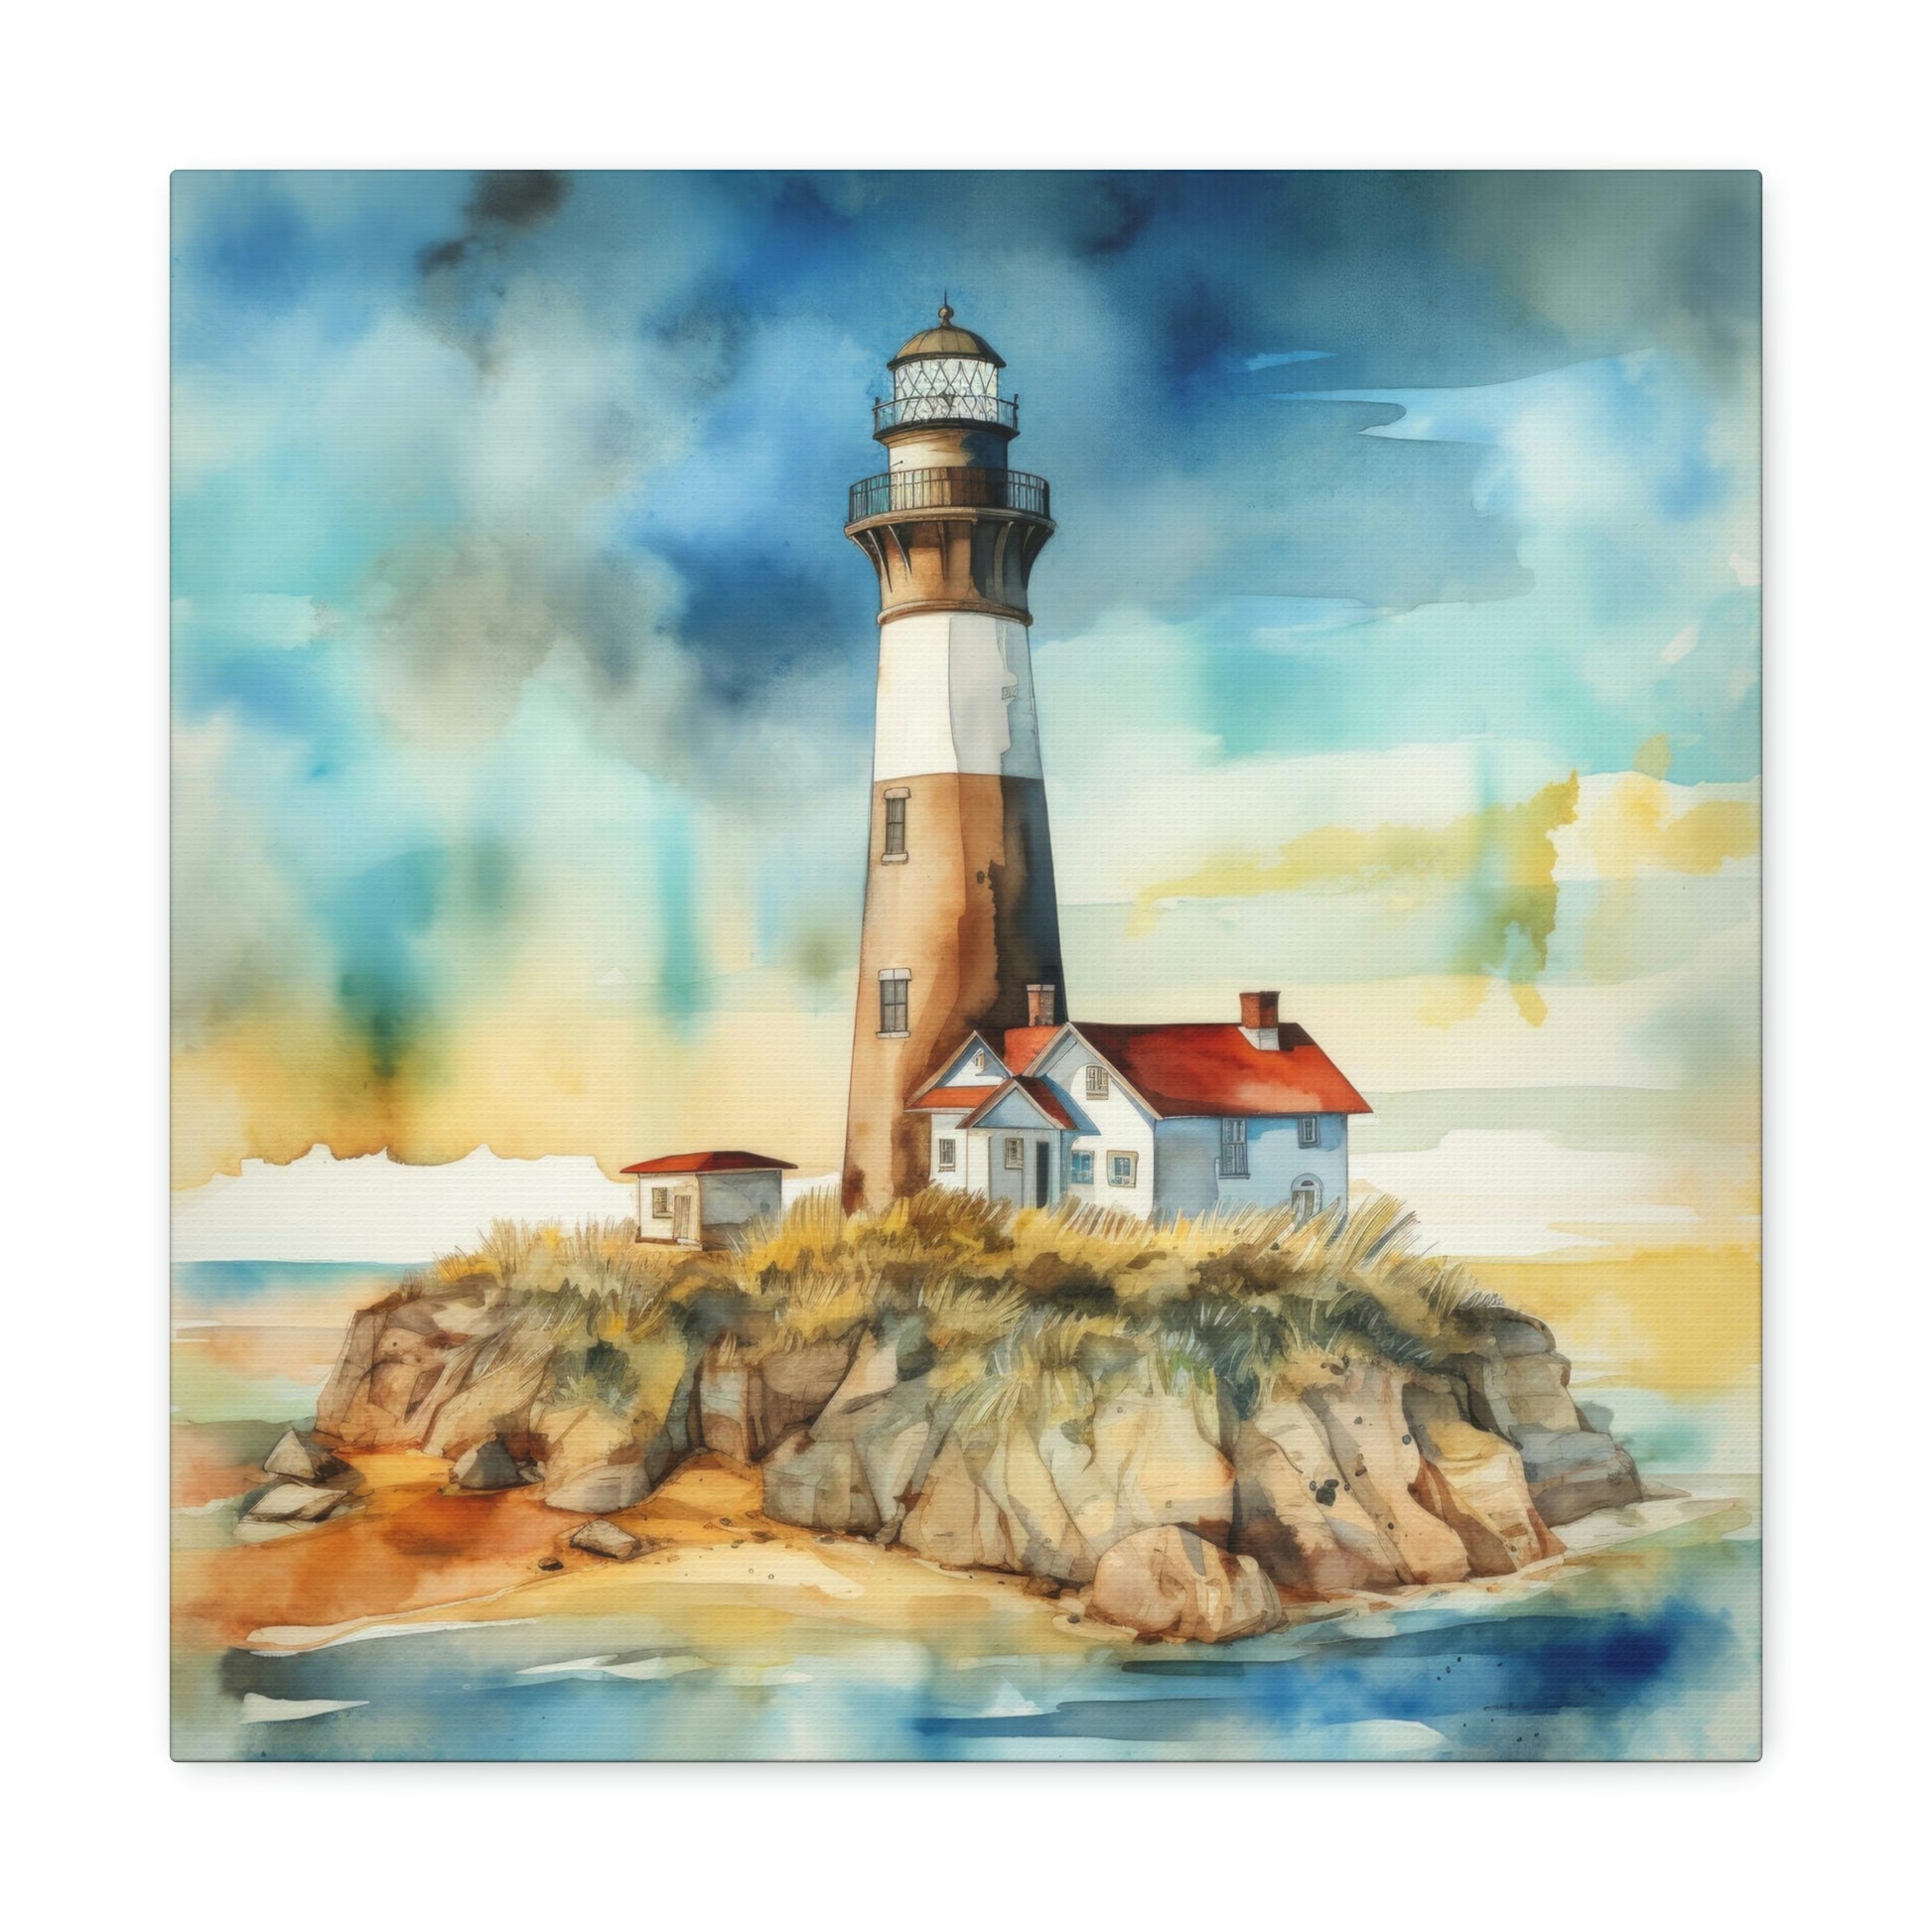 lighthouse canvas wall decor, lighthouse theme wall art for nautical theme room, coastal lighthouse canvas art print